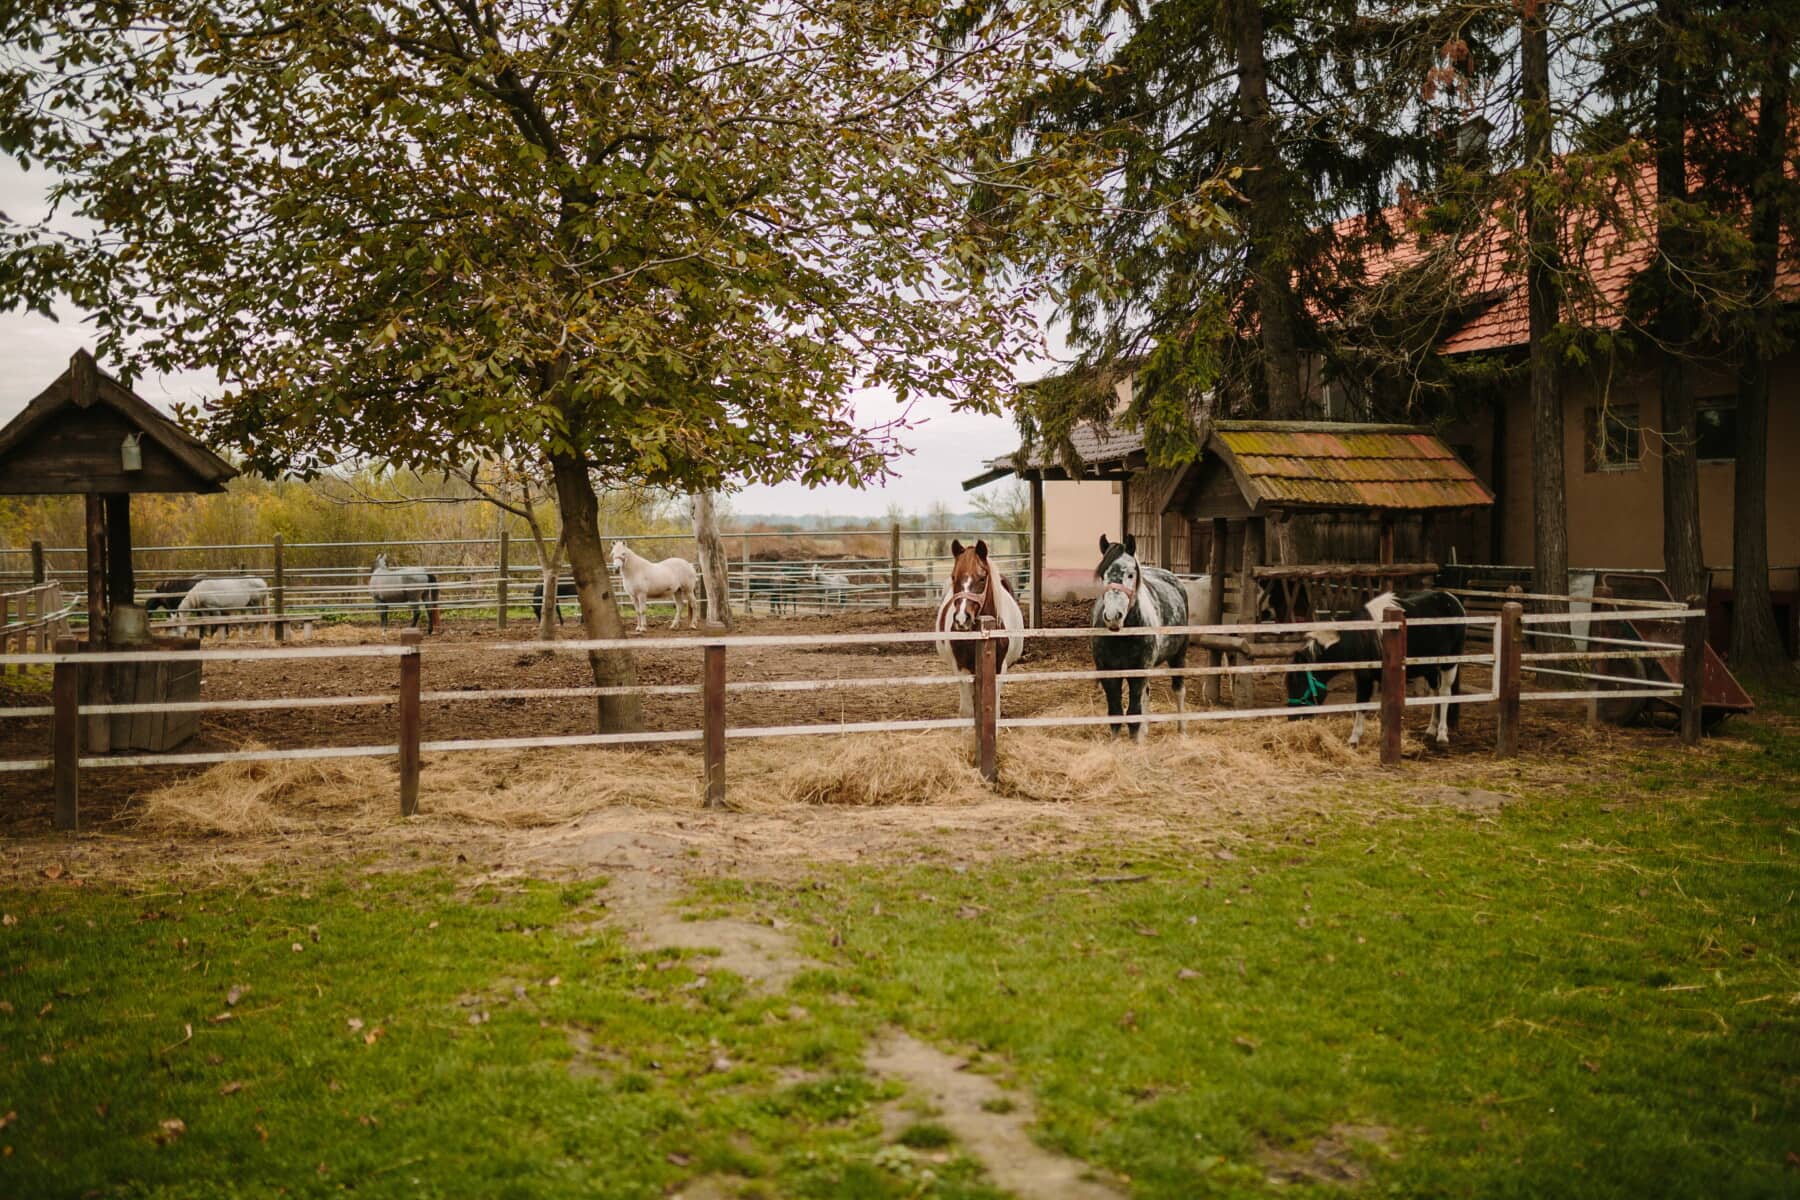 konie, zagroda, Farmhouse, ranczo, zwierzęta, wieś, ogrodzeniem, obszarów wiejskich, Stodoła, trawa